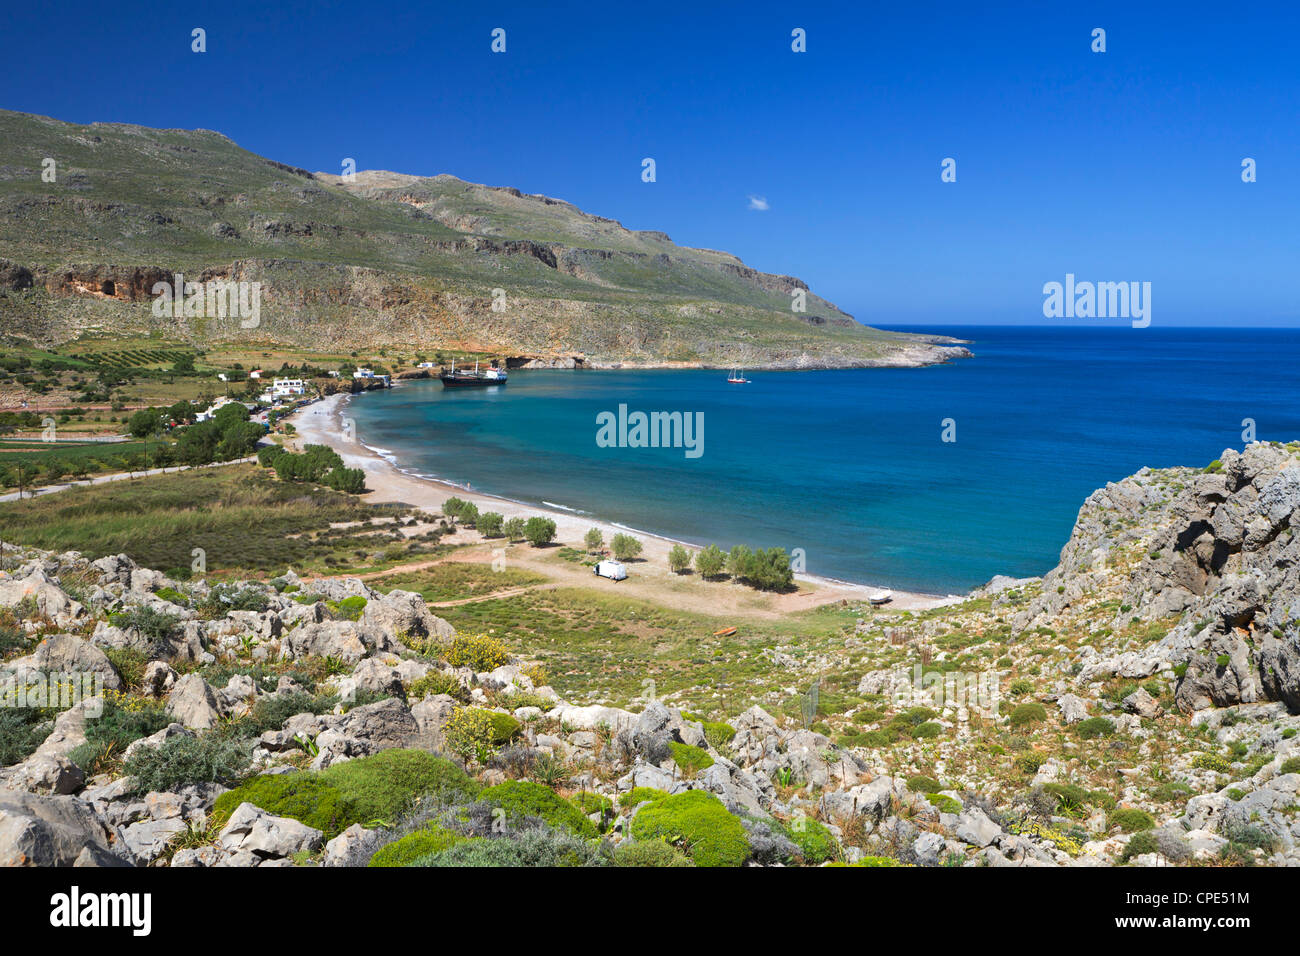 Vue sur la plage, Kato Zakros, λασίθι, Crète, îles grecques, Grèce, Europe Banque D'Images